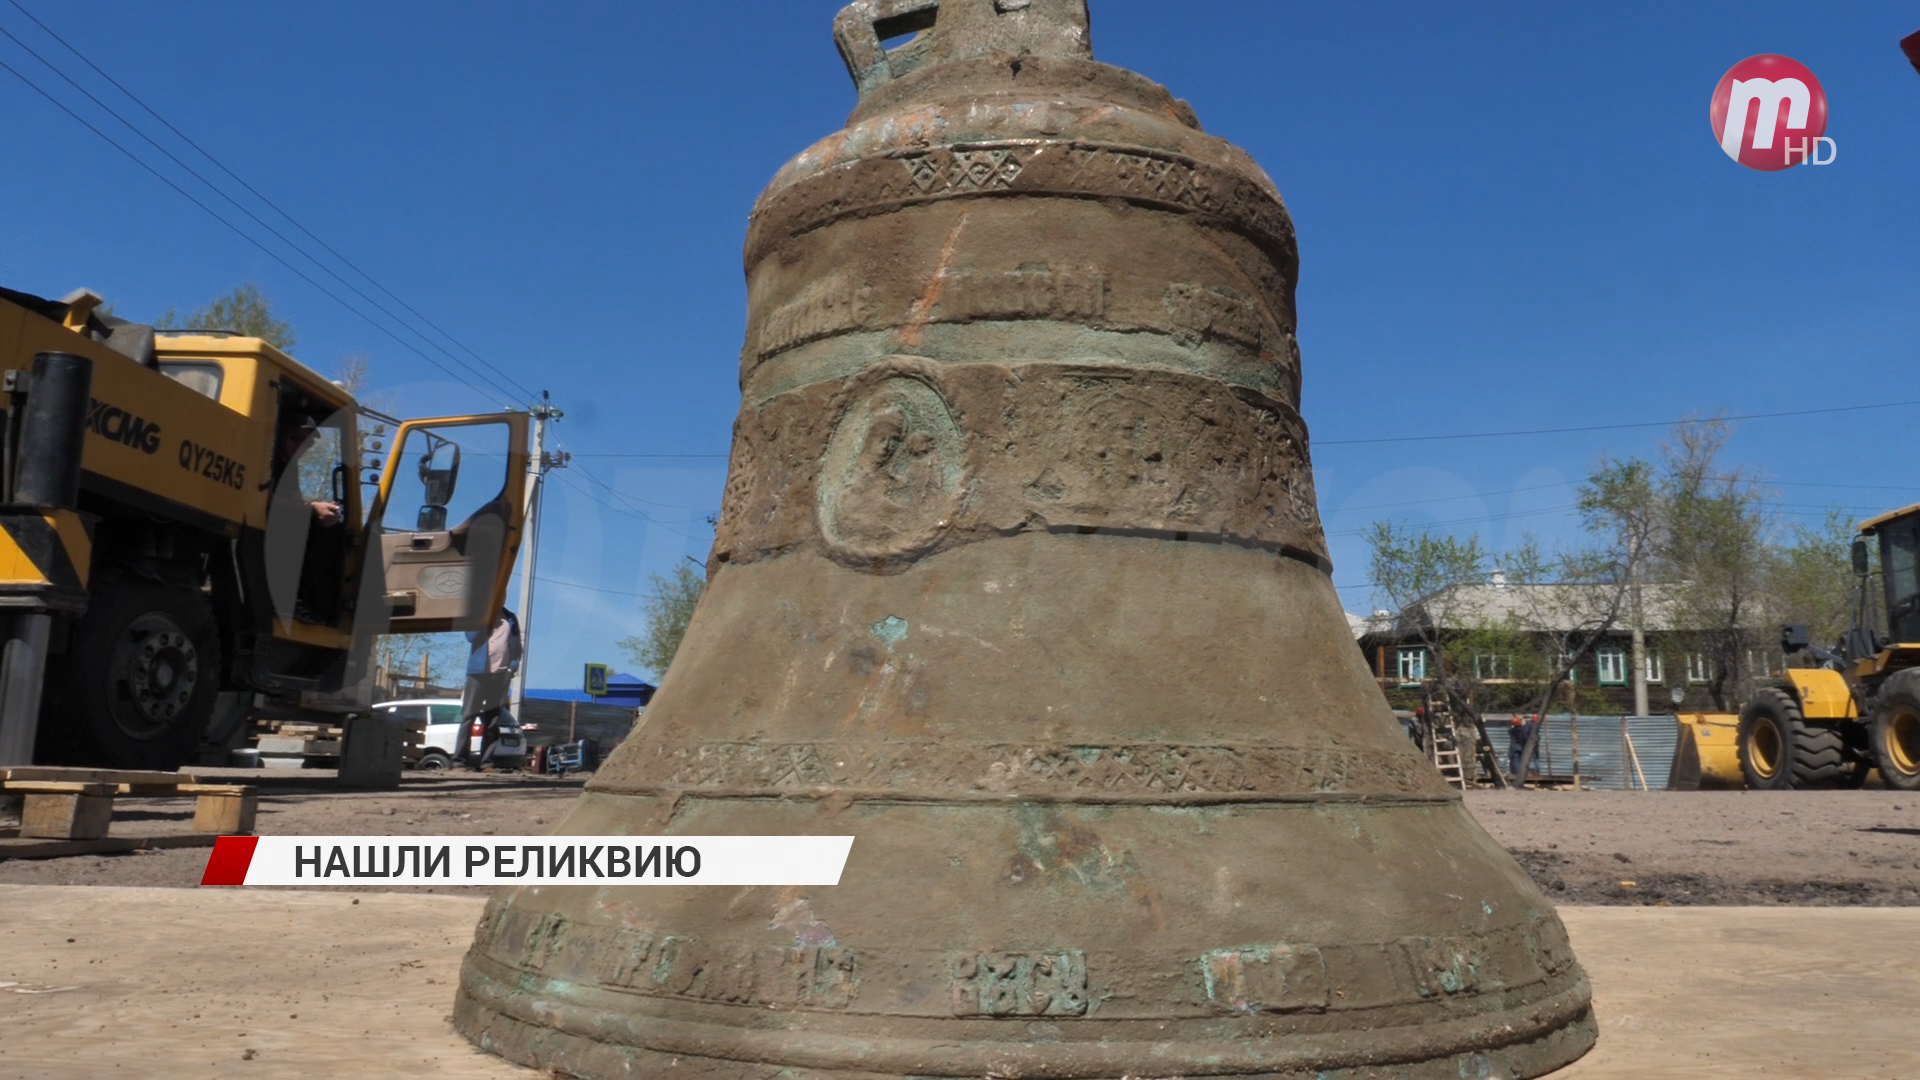 В Улан-Удэ выкопали старинный колокол